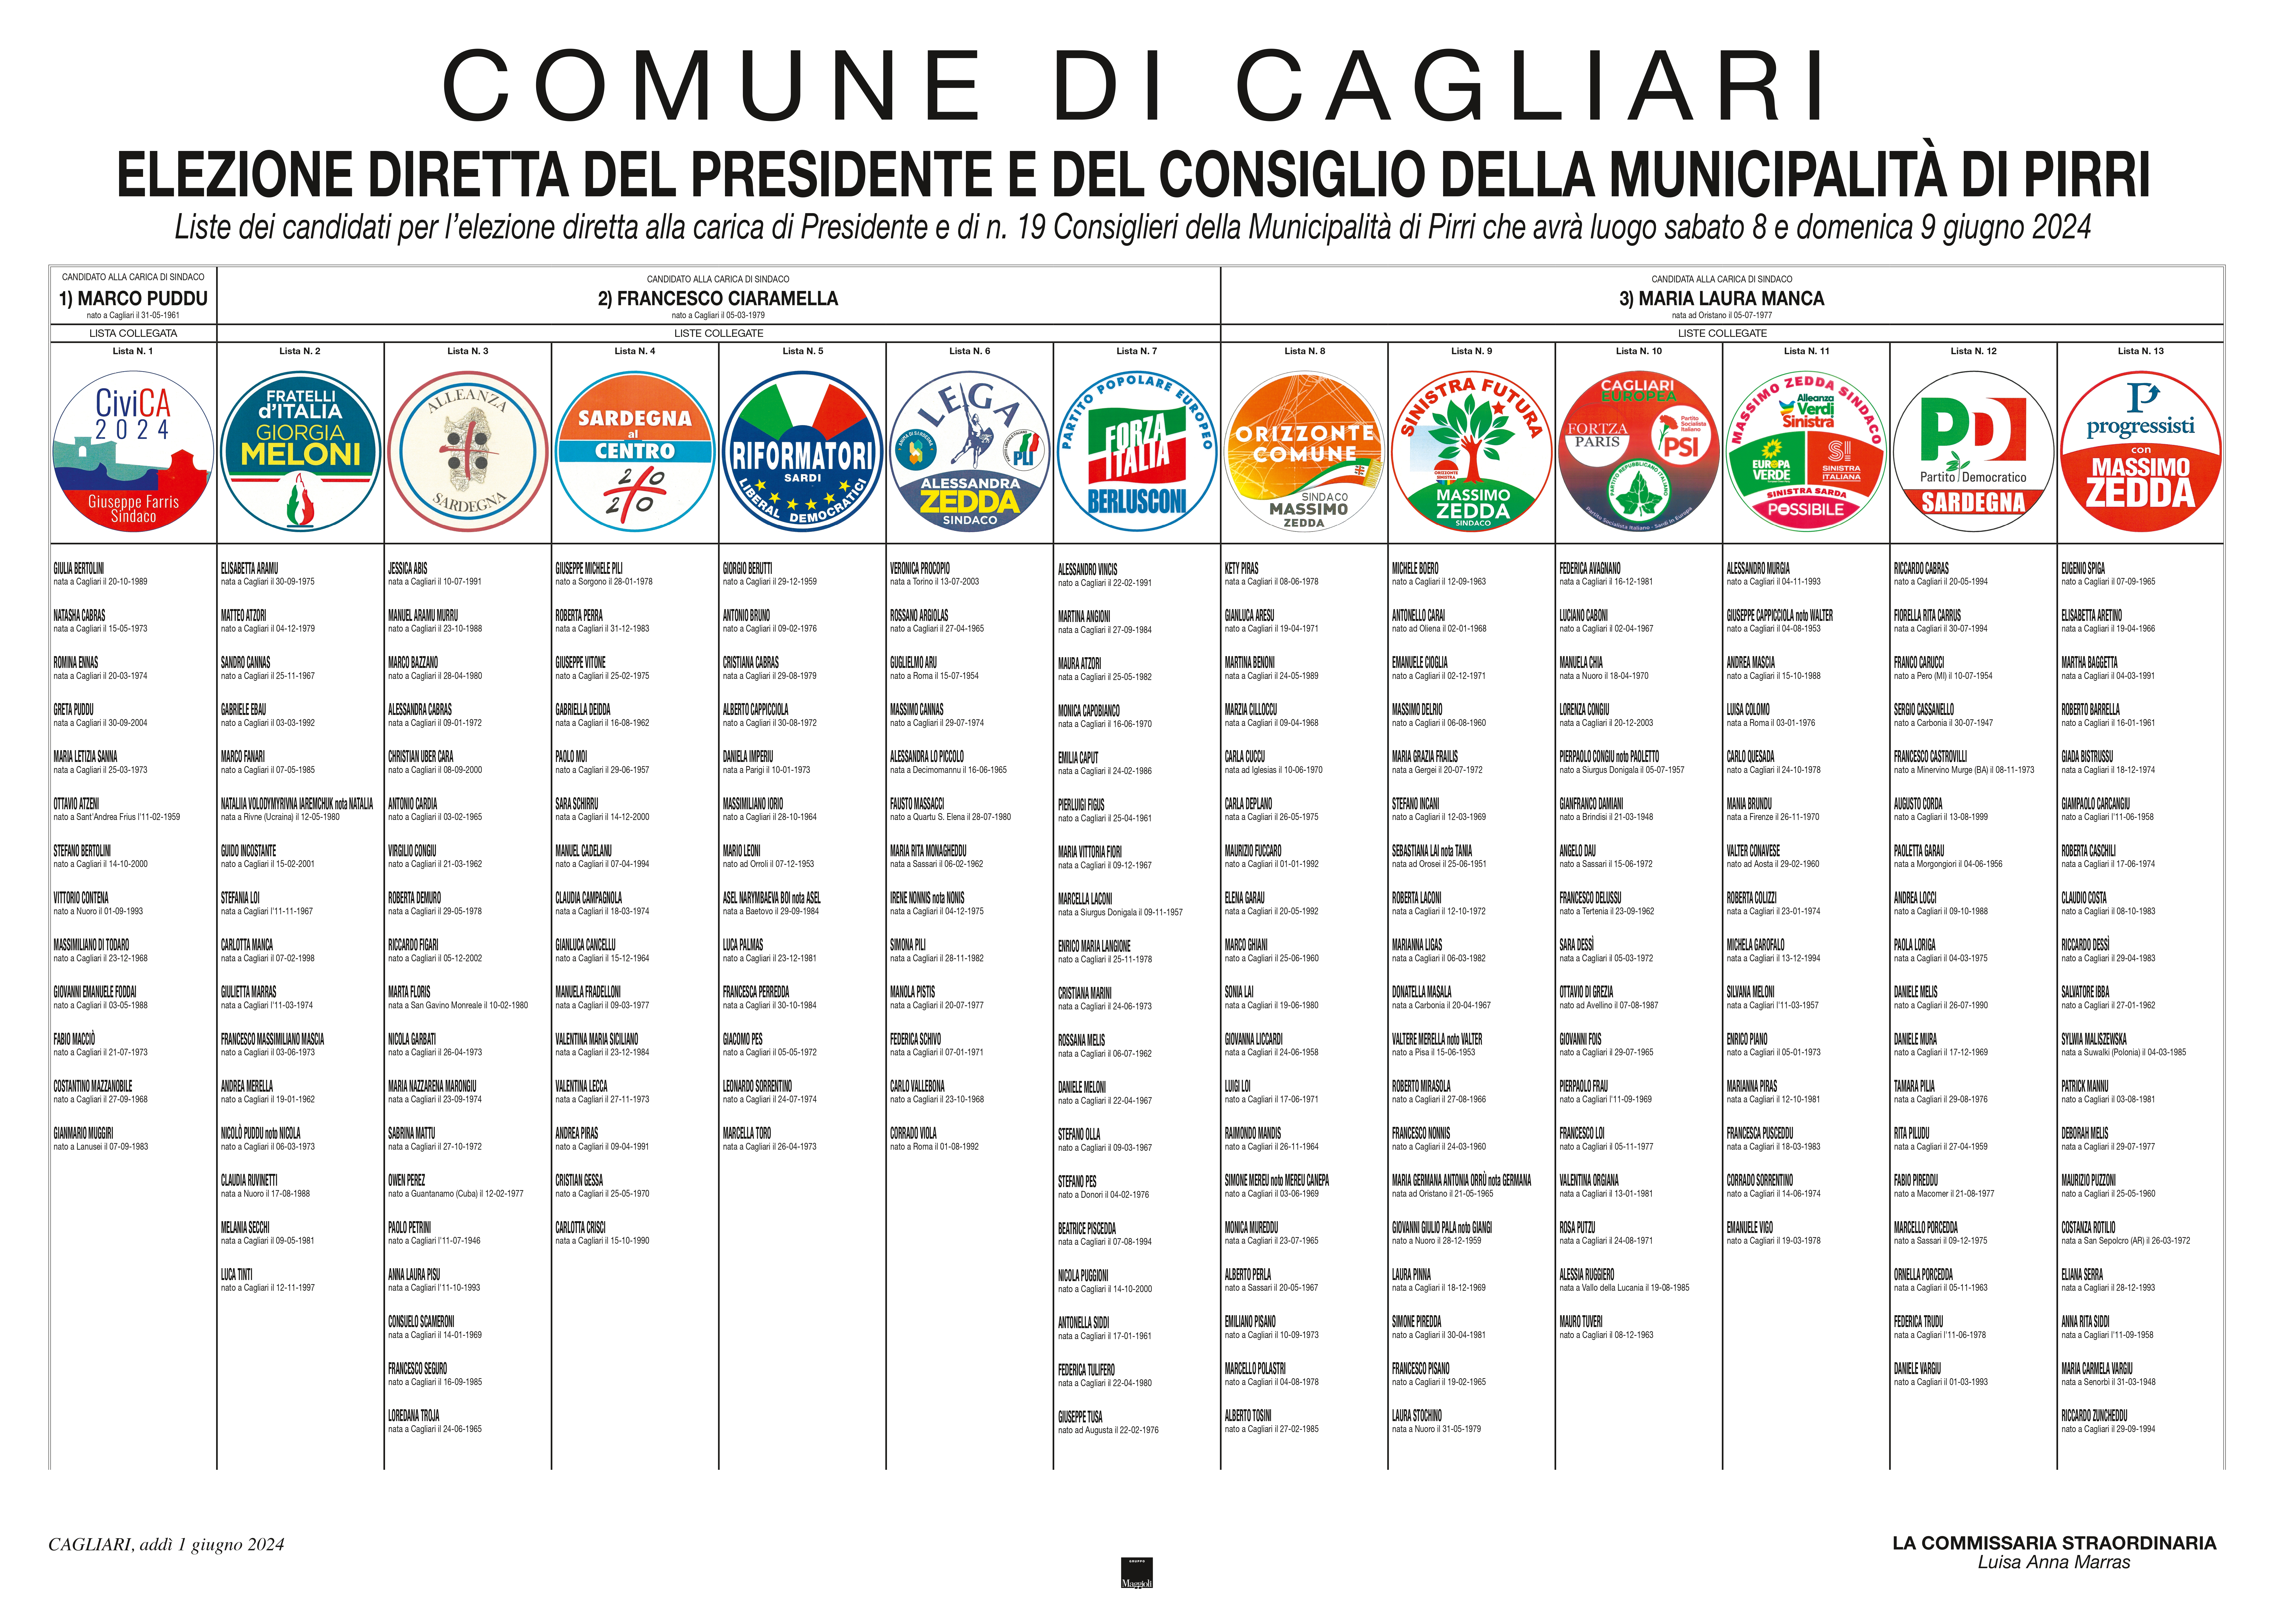 Cagliari. Online il Manifesto dei candidati per l’elezione diretta del Sindaco e del Consiglio Comunale